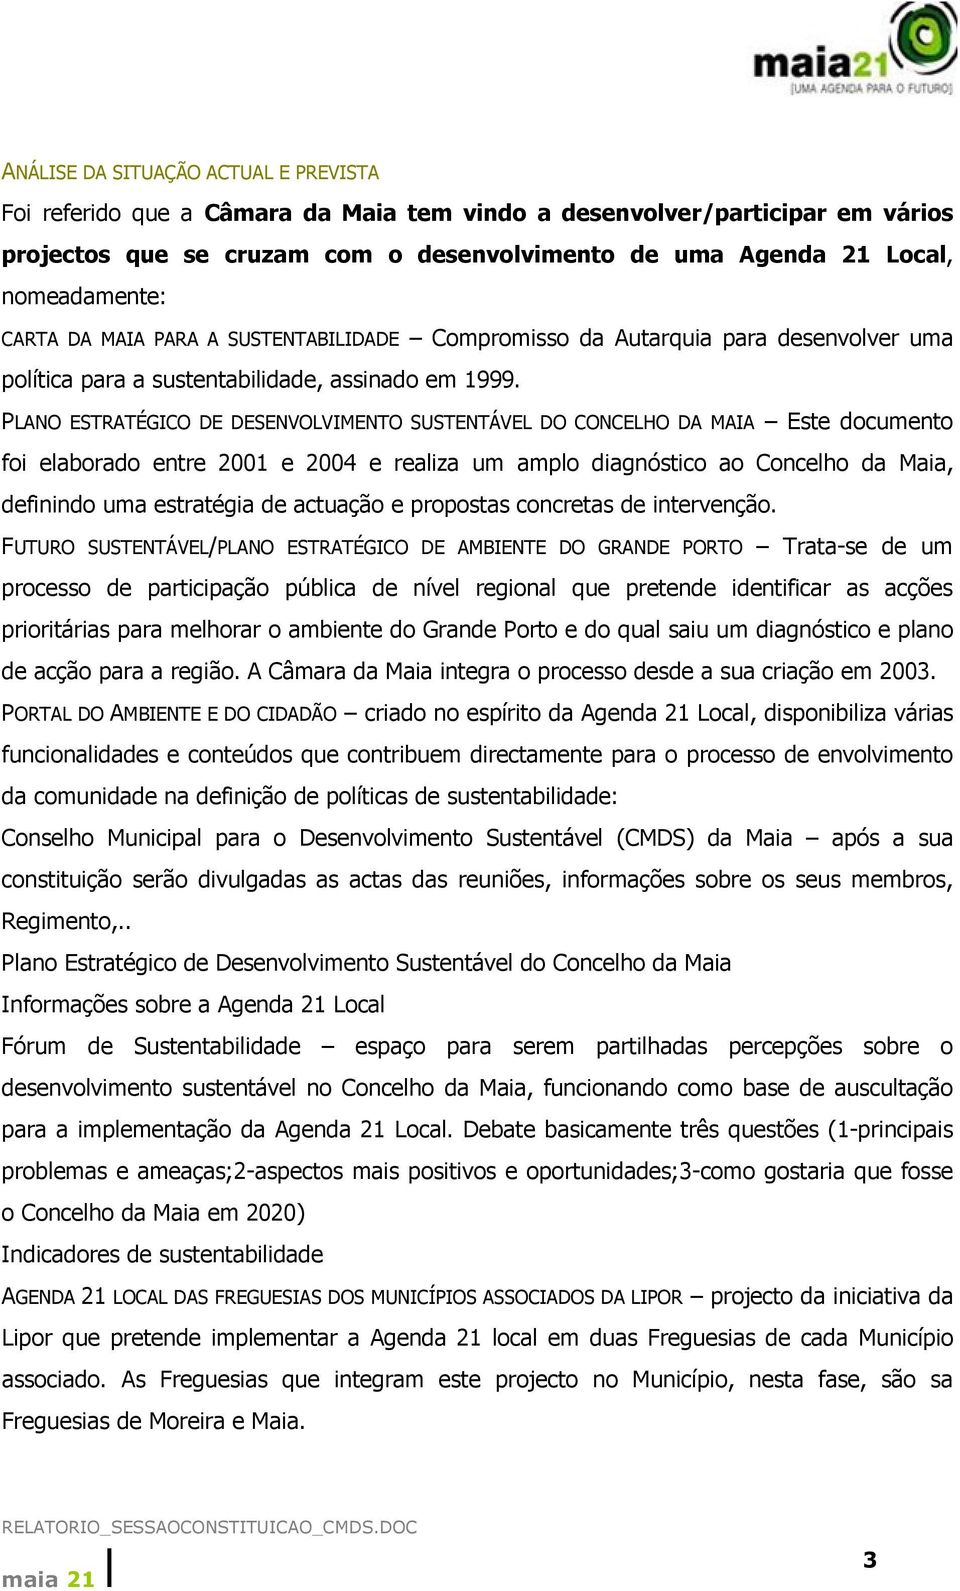 PLANO ESTRATÉGICO DE DESENVOLVIMENTO SUSTENTÁVEL DO CONCELHO DA MAIA Este documento foi elaborado entre 2001 e 2004 e realiza um amplo diagnóstico ao Concelho da Maia, definindo uma estratégia de